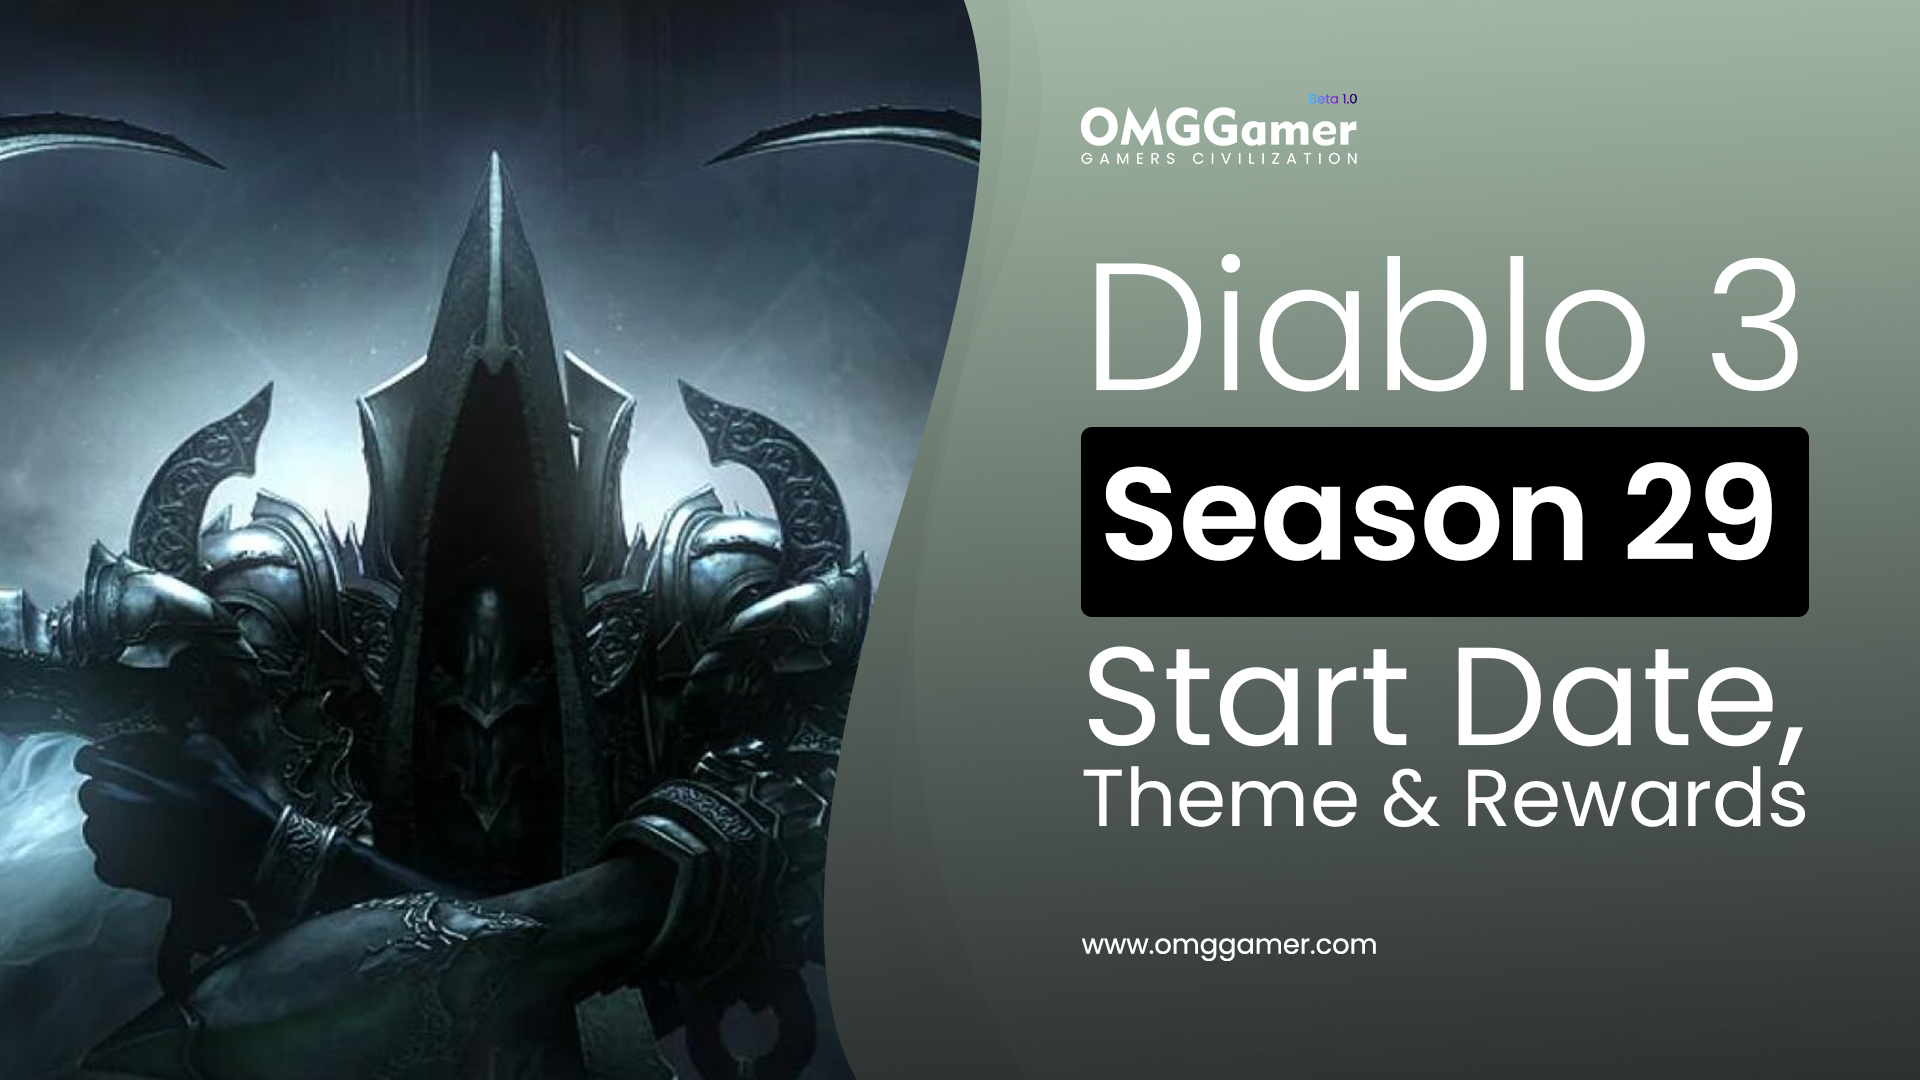 Diablo 3 Season 29 Start Date, Theme & Rewards